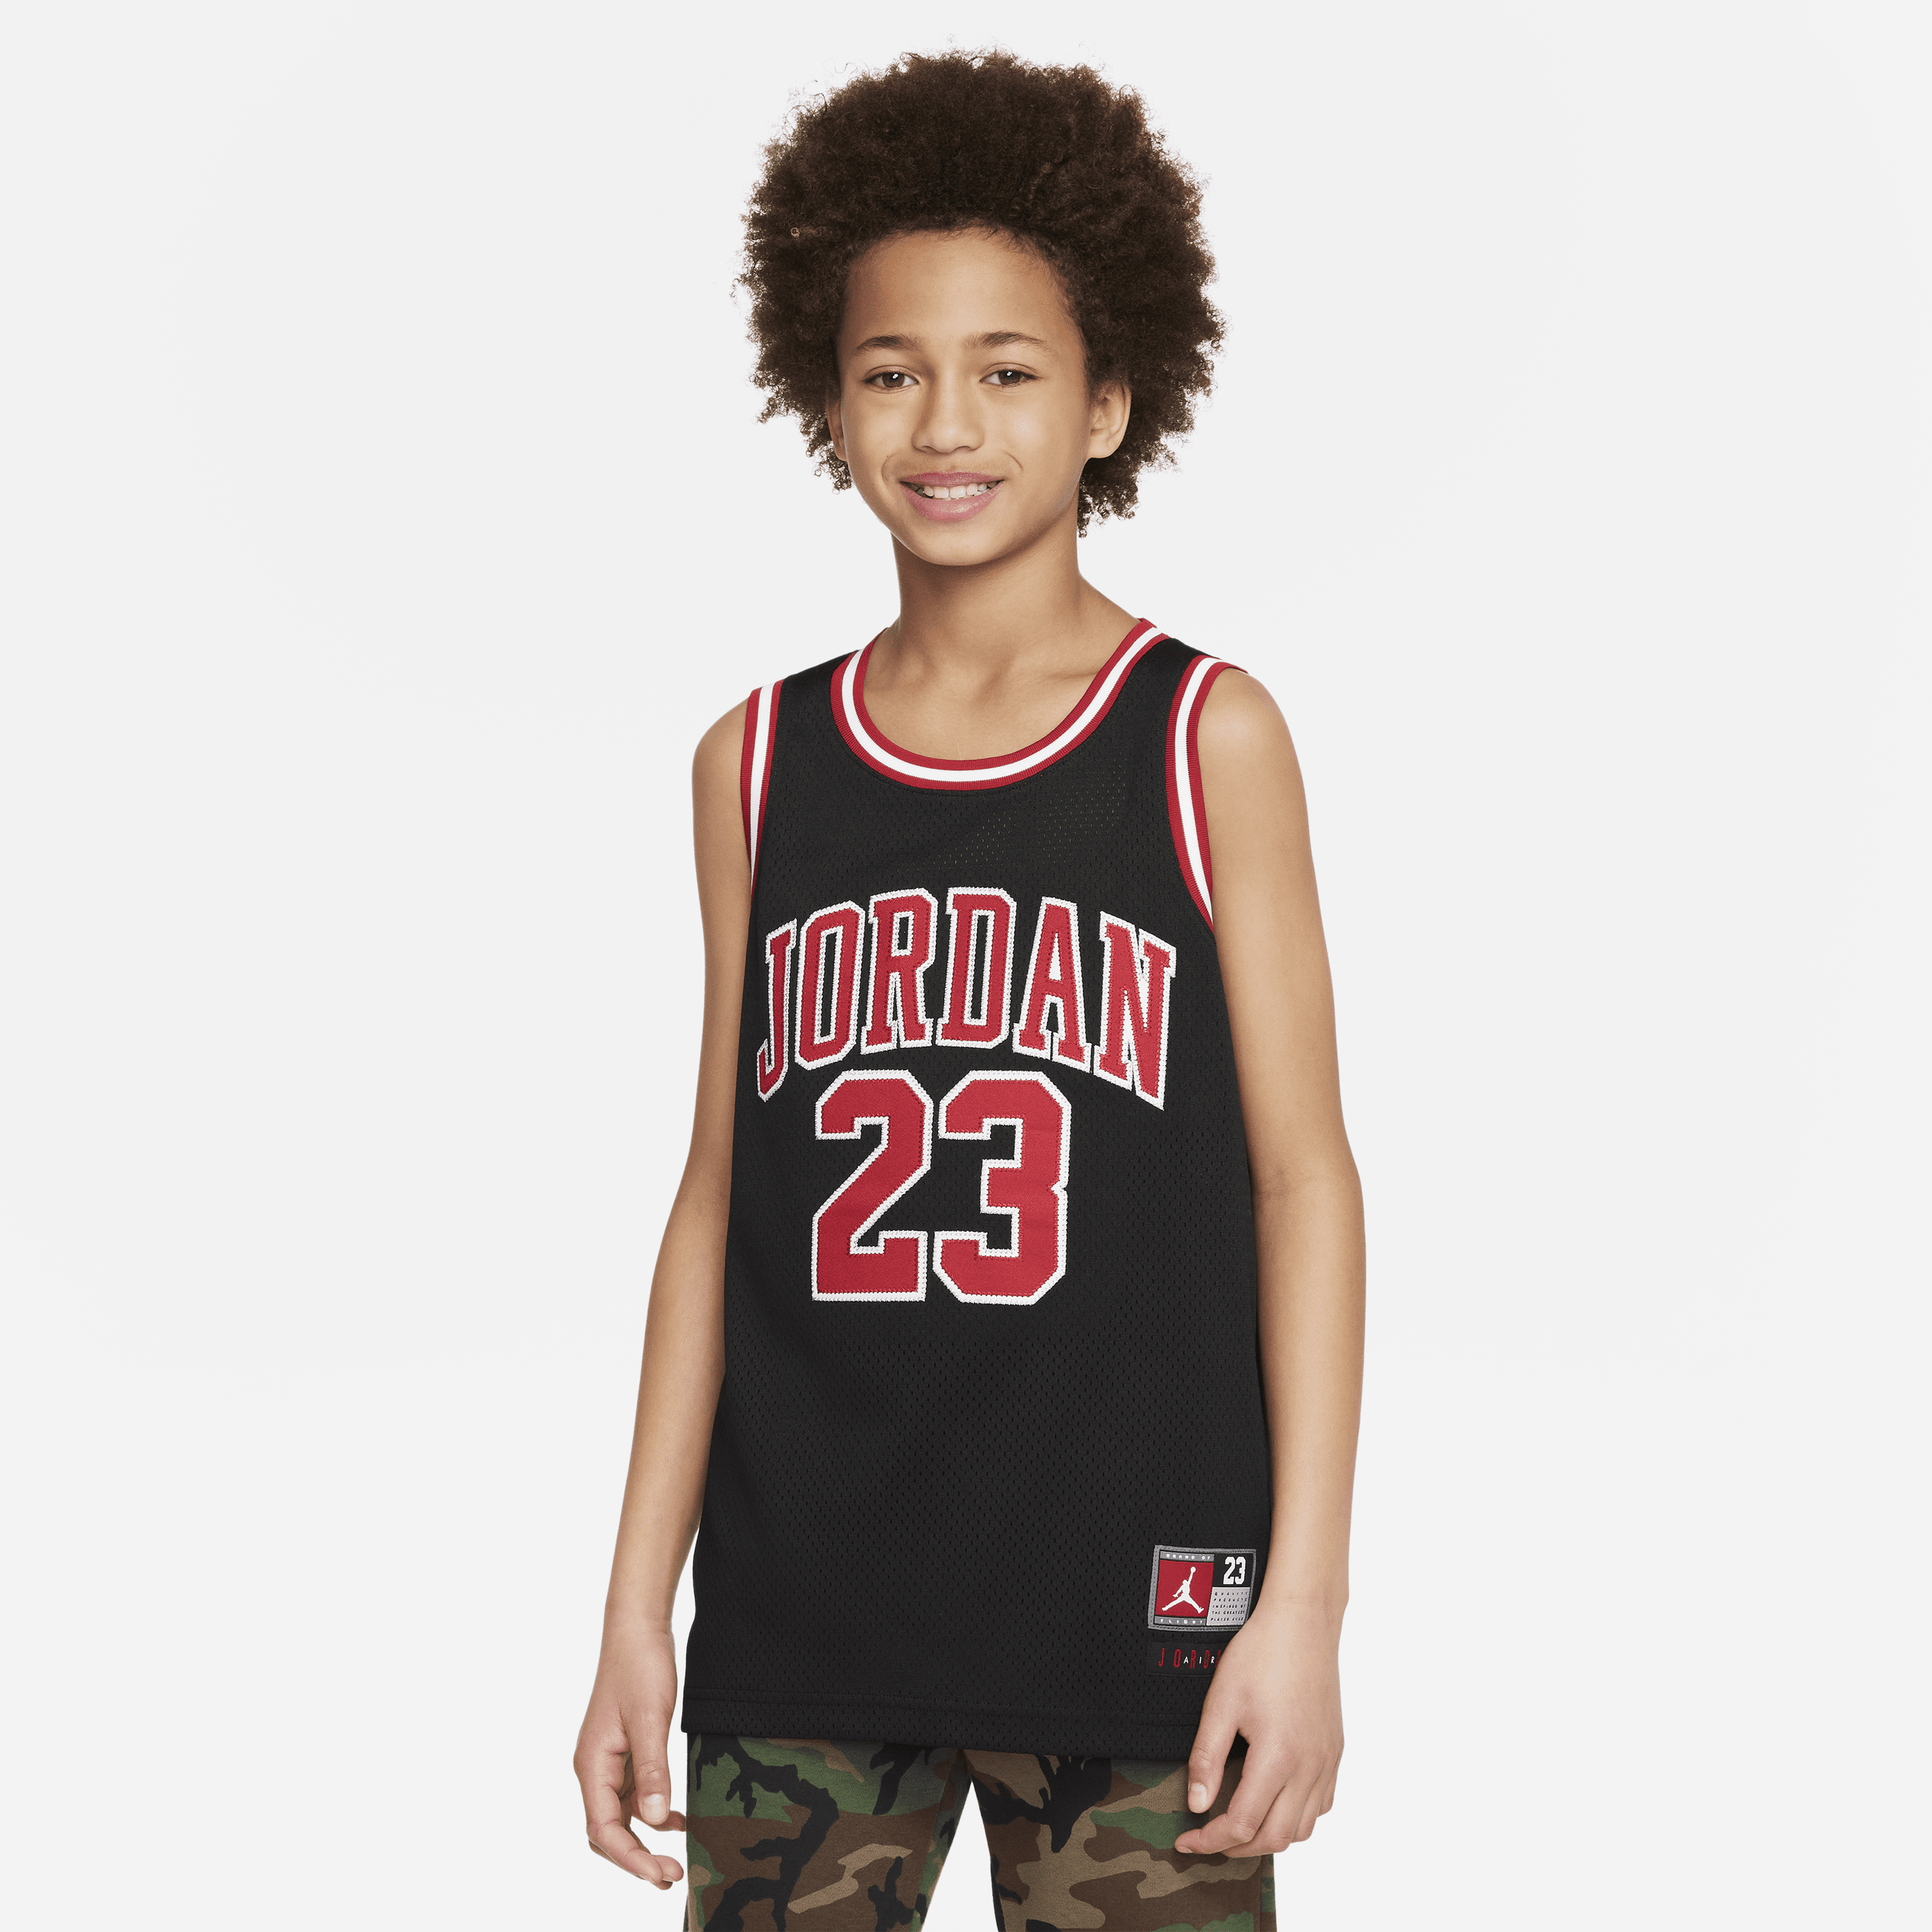 Jordan Camiseta de tirantes - Niño - Negro